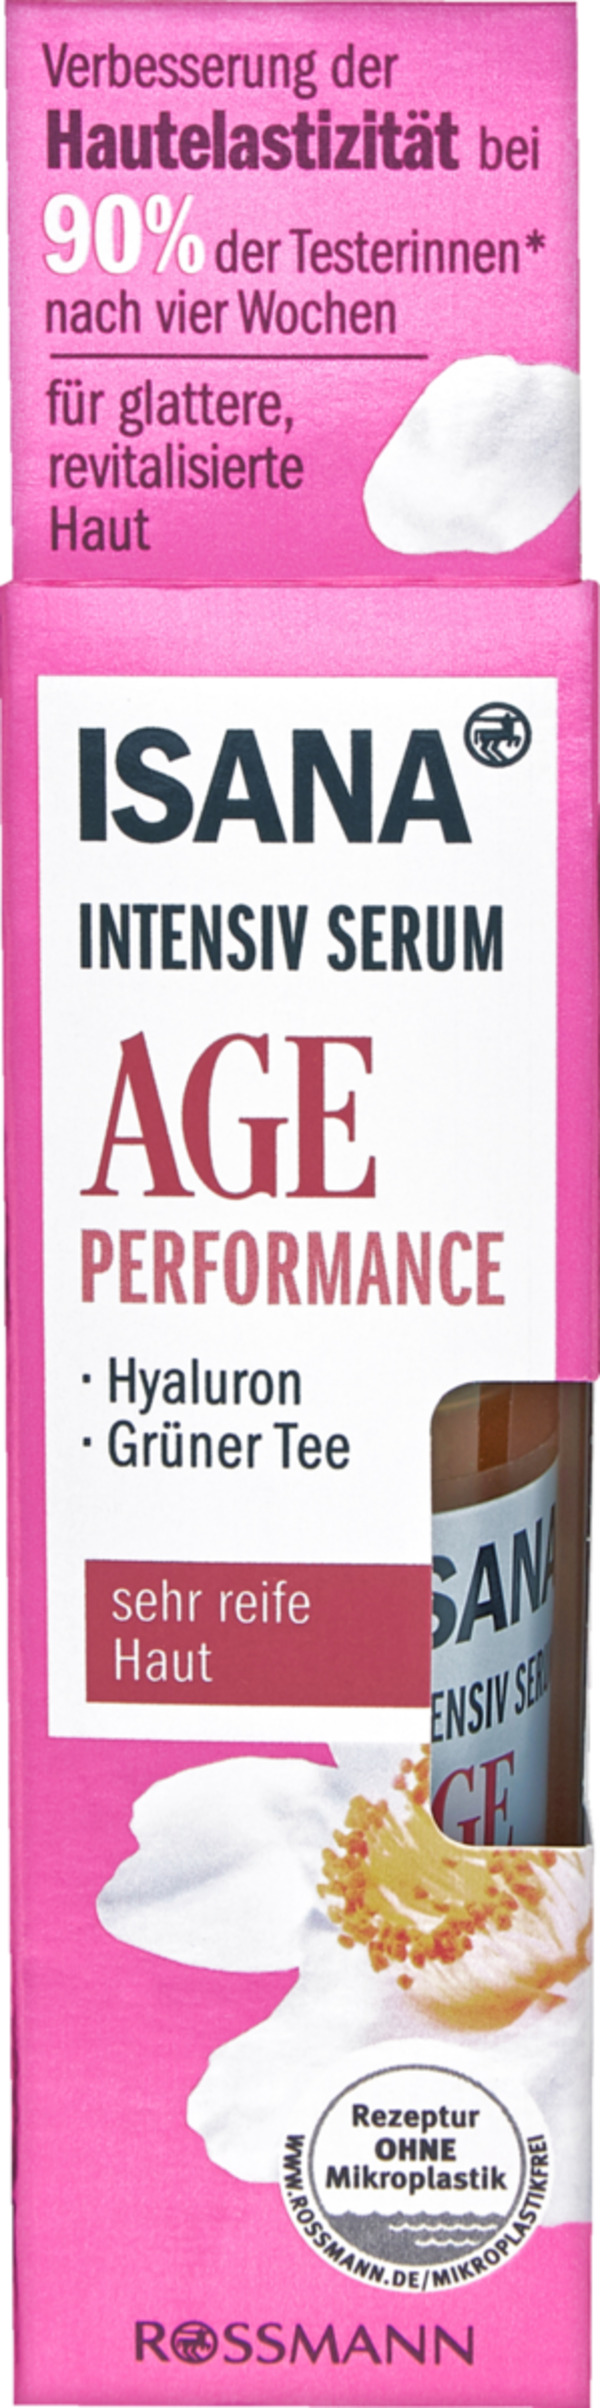 Bild 1 von ISANA Age Performance Intensiv Serum 16.63 EUR/100 ml